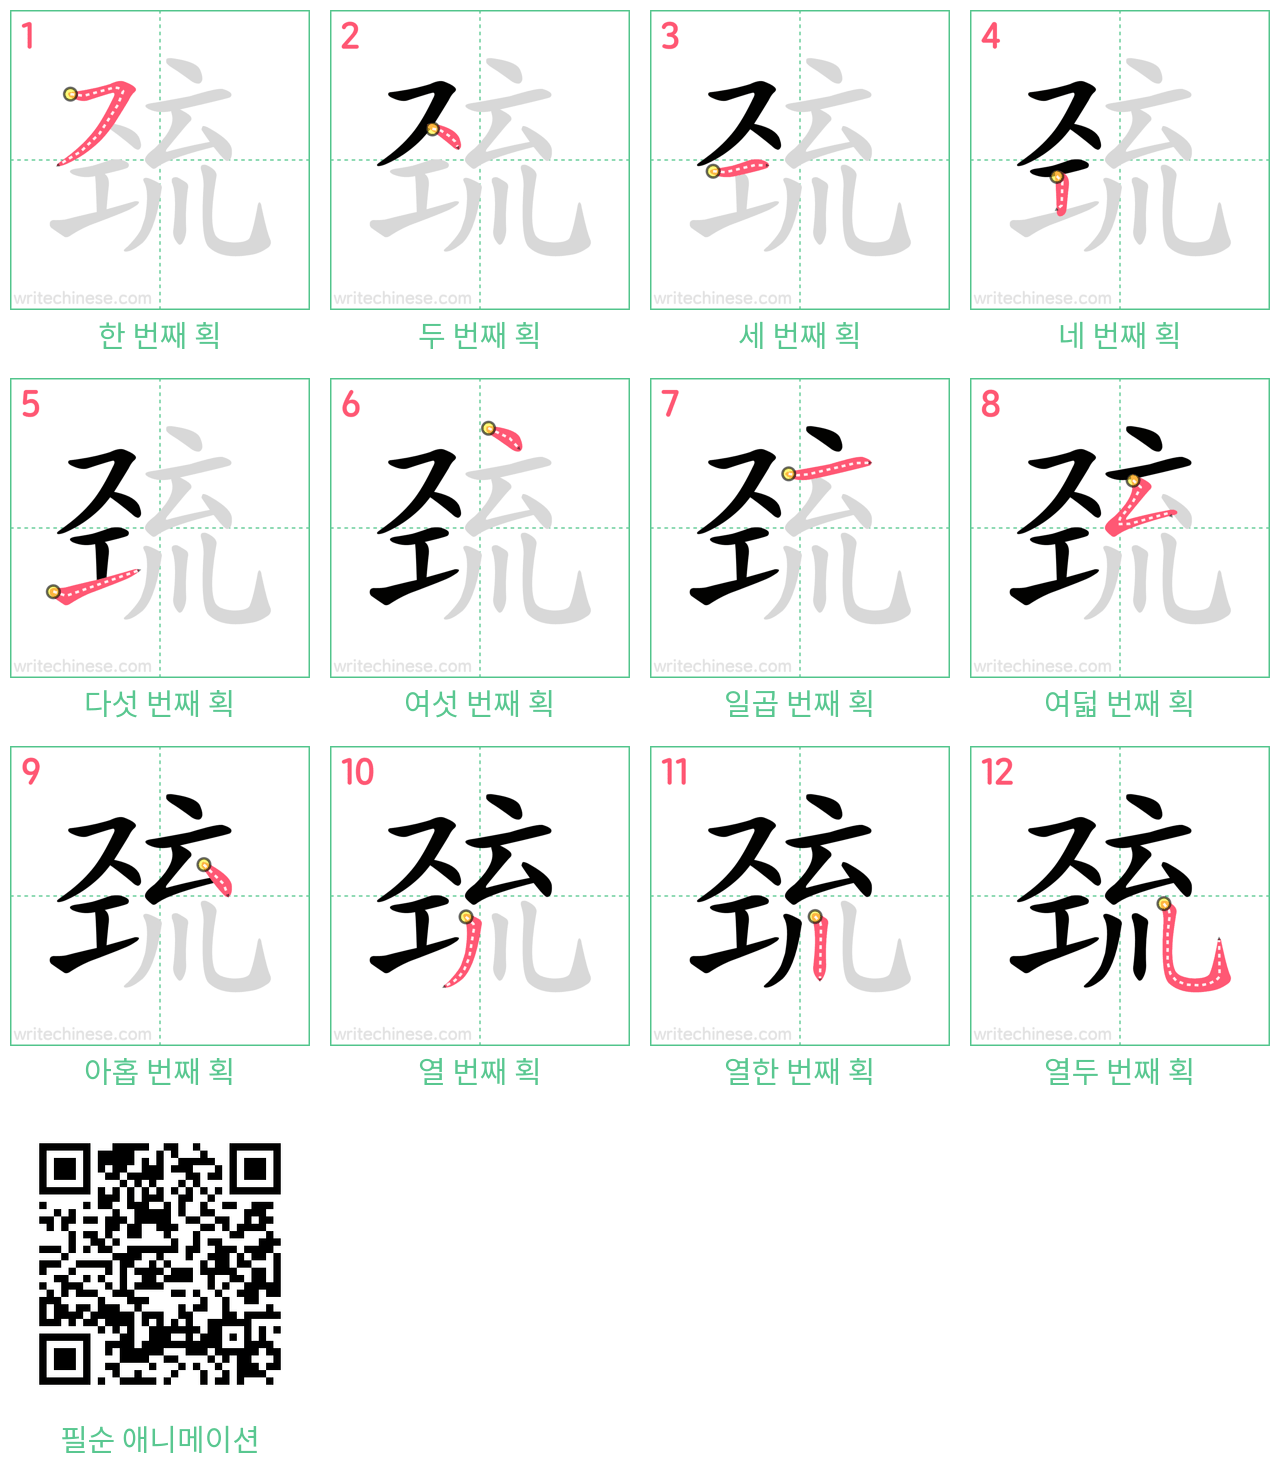 巯 step-by-step stroke order diagrams